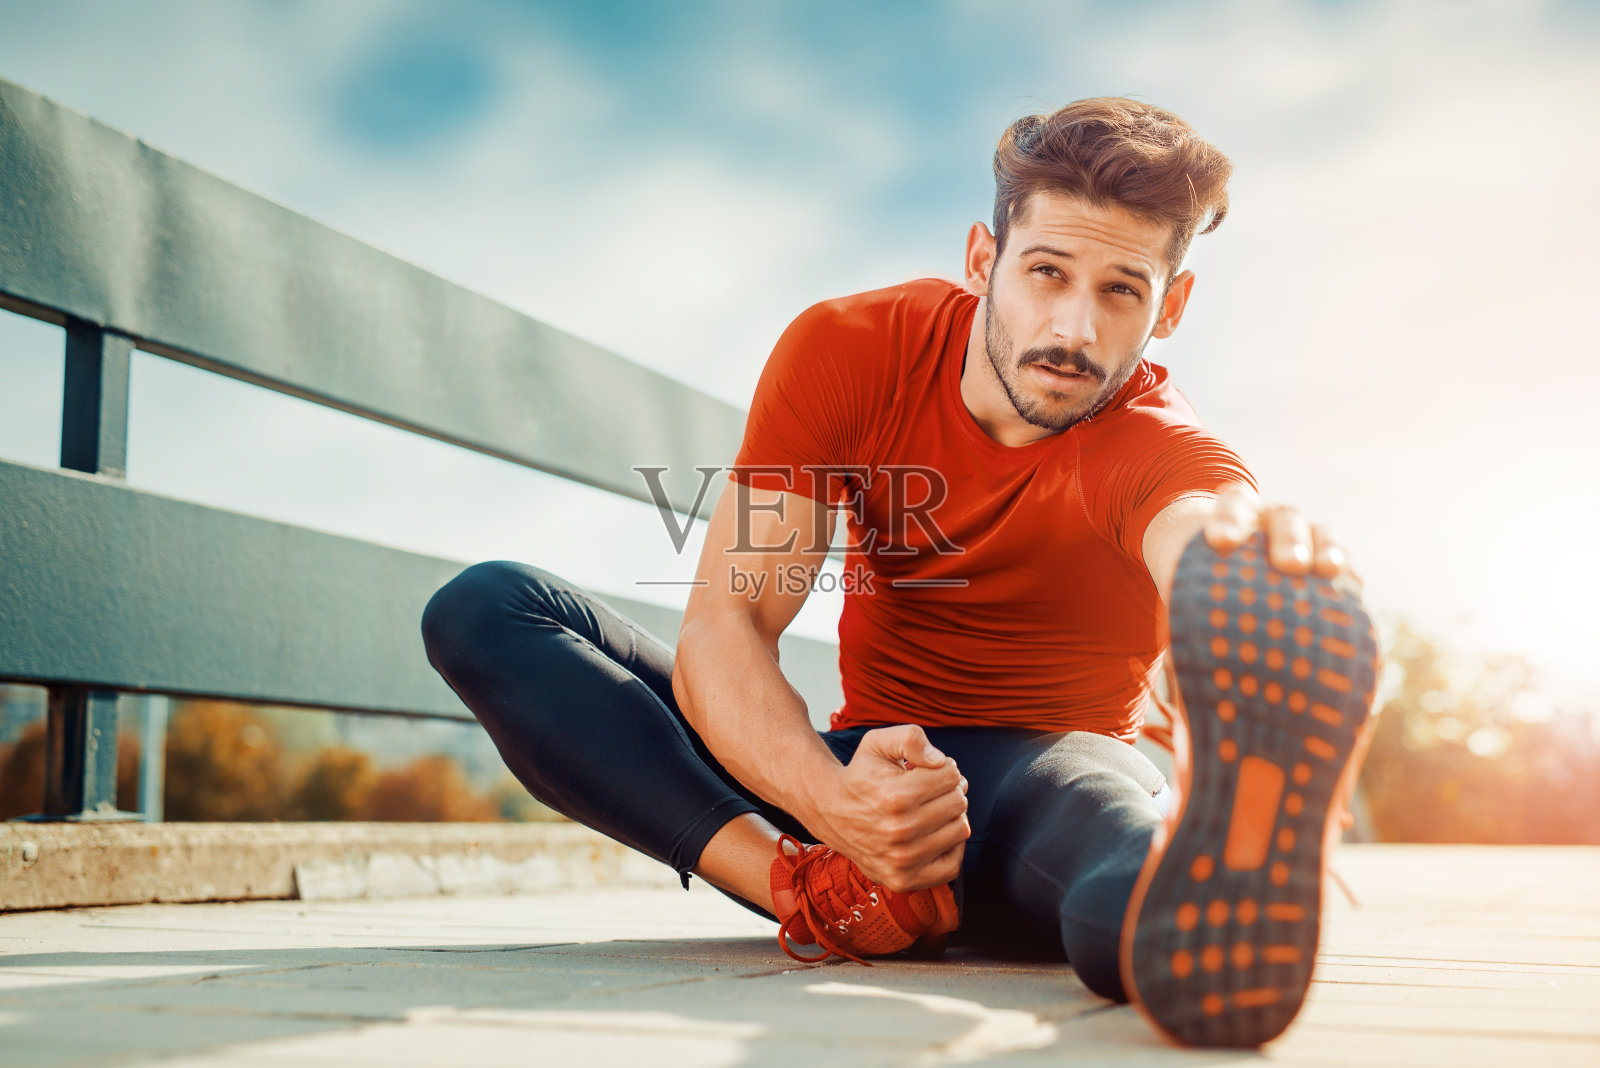 一个健身男子做伸展运动的肖像照片摄影图片